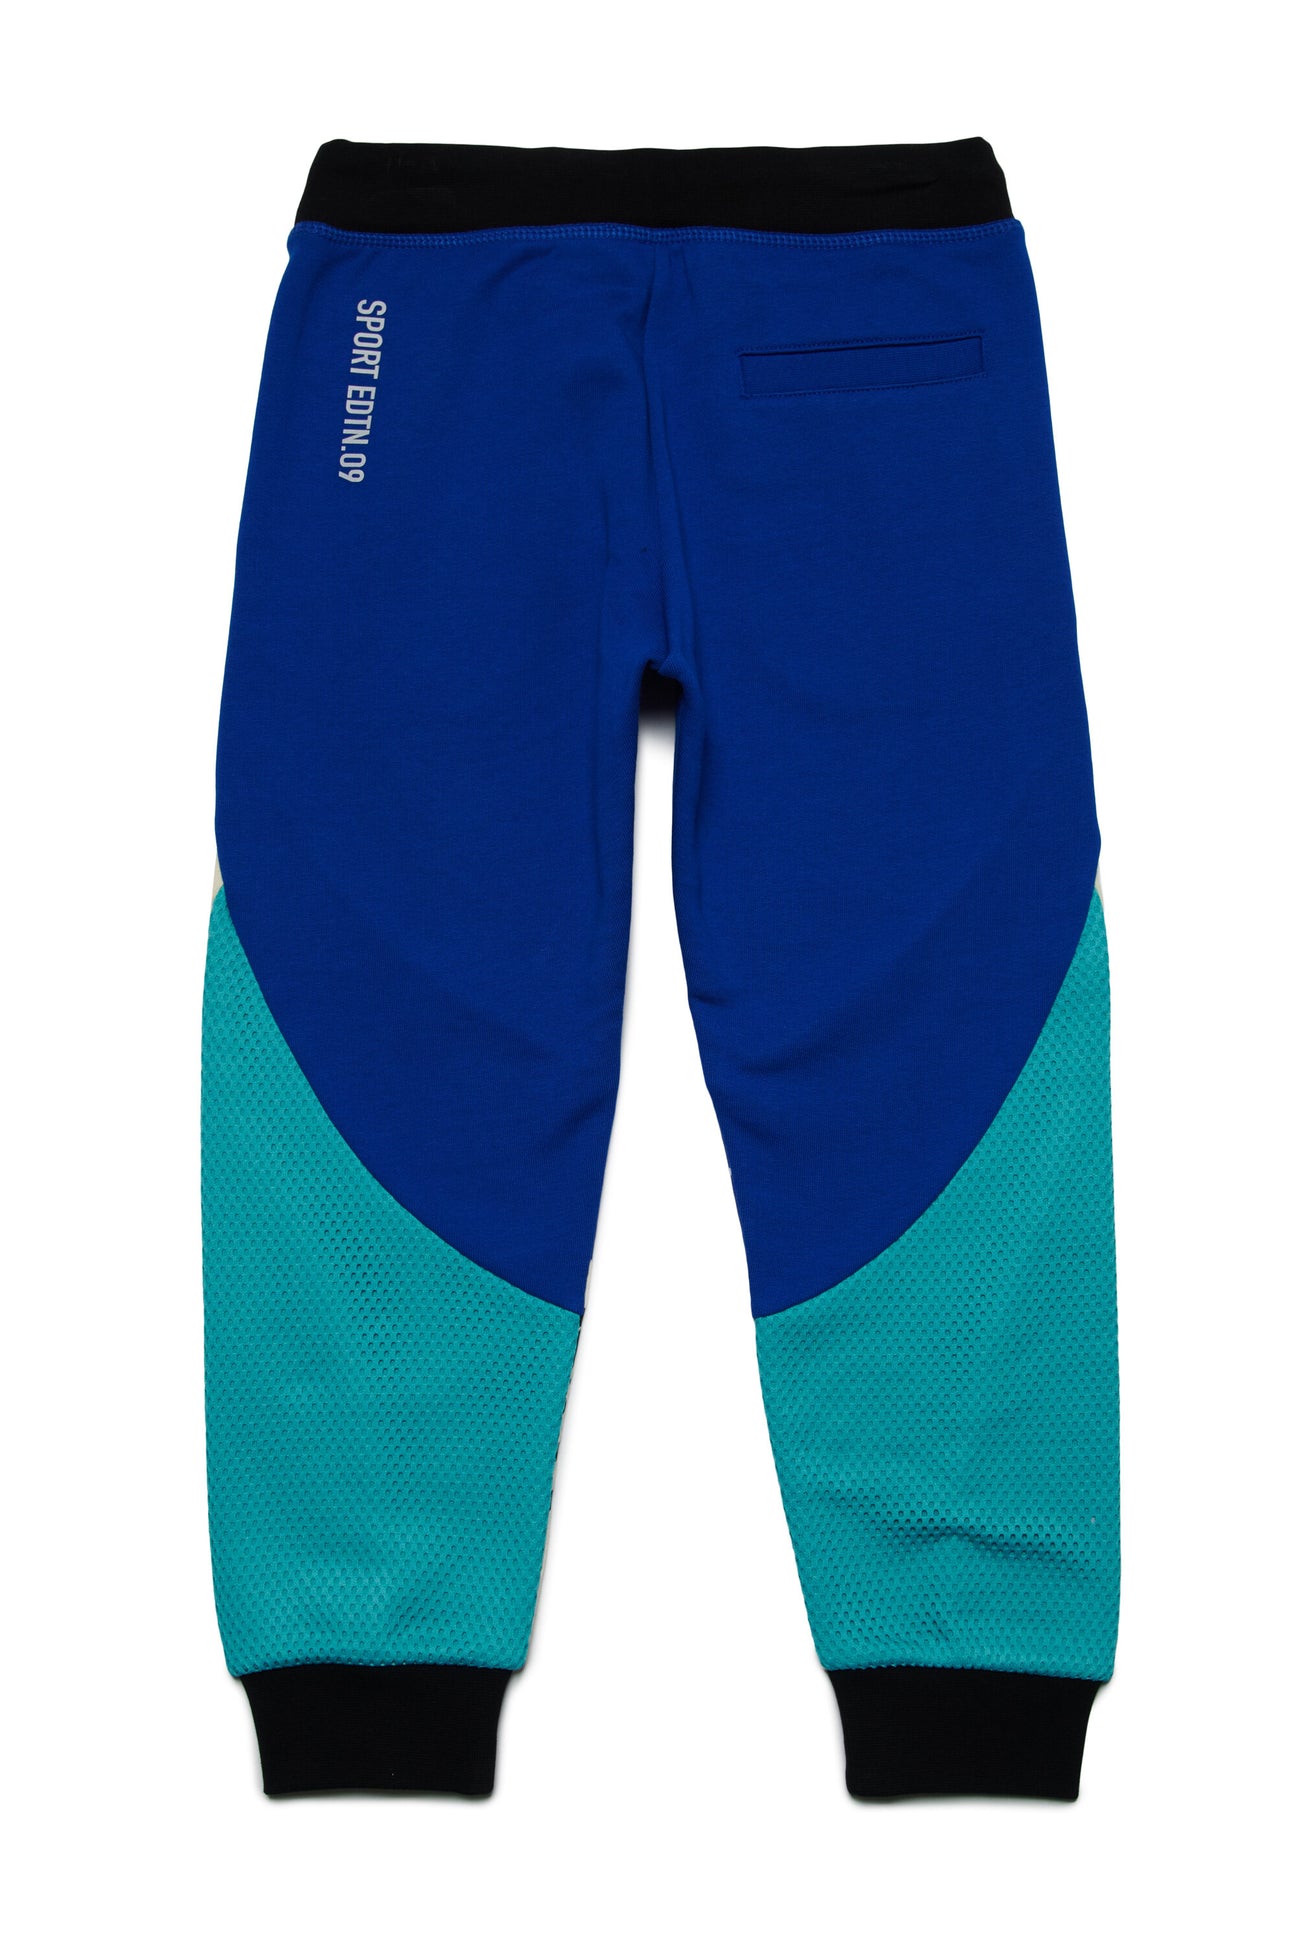 Pantalones deportivos multicapa con marca Pantalones deportivos multicapa con marca